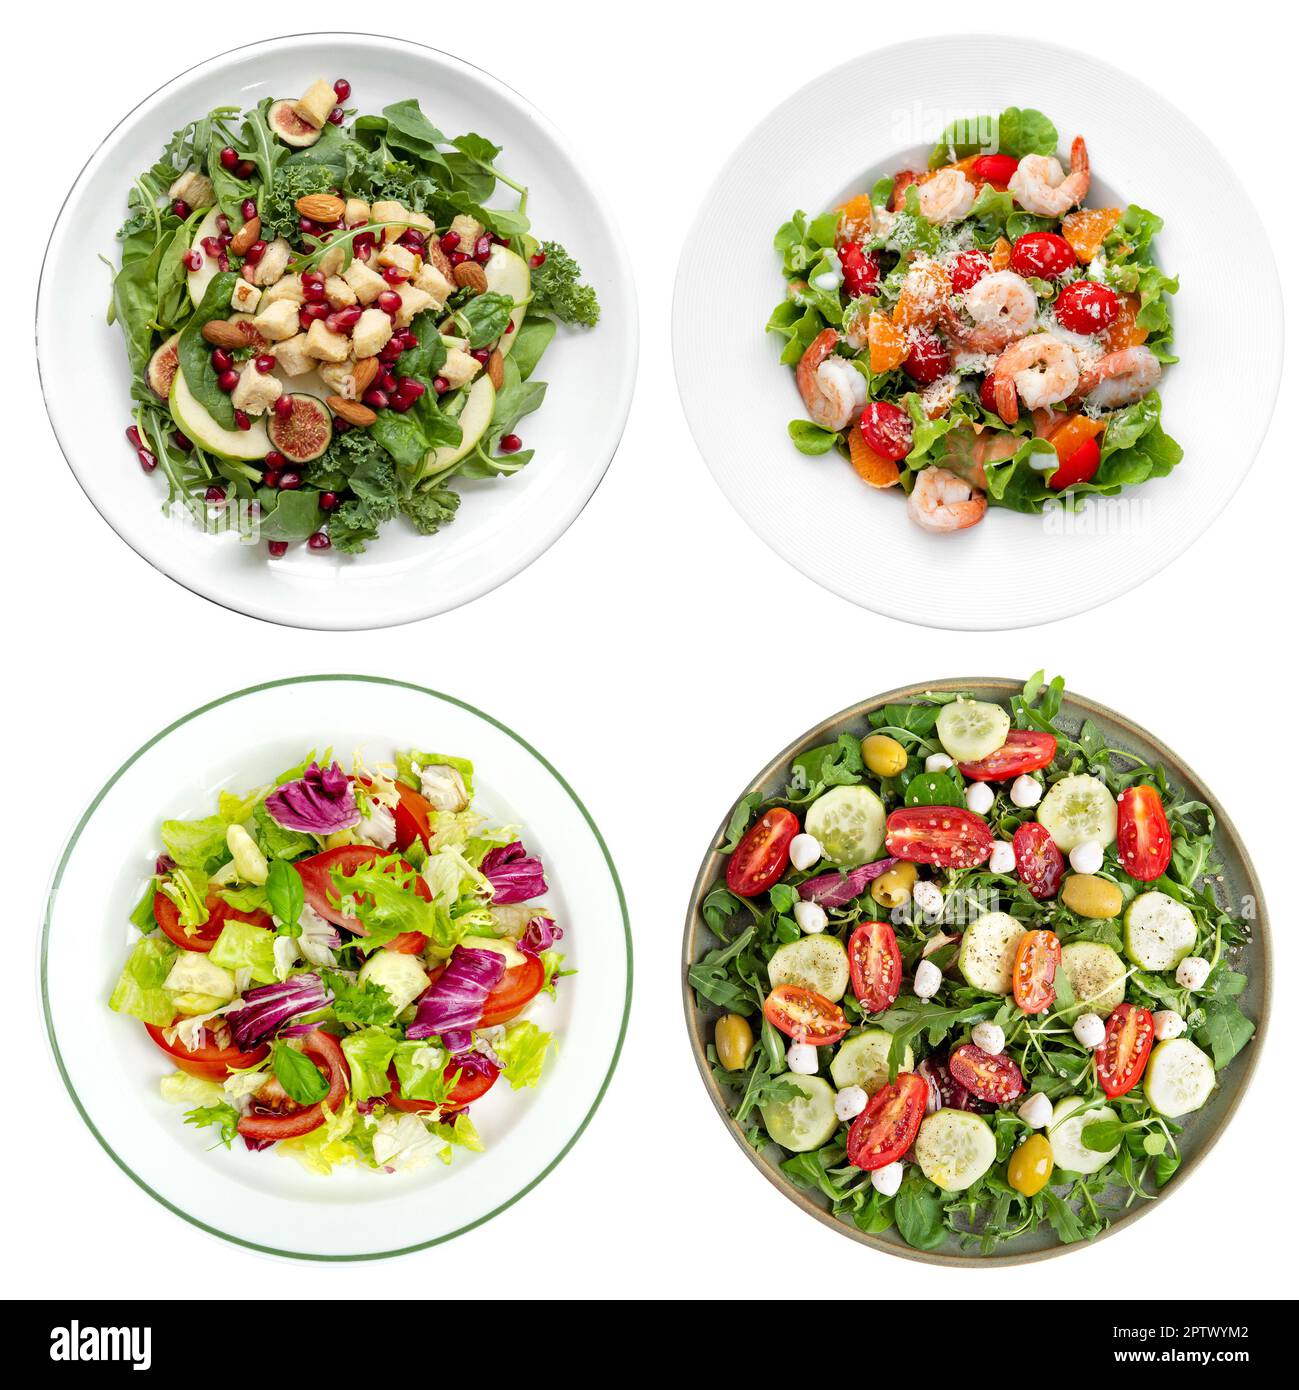 Piatto di insalata di verdure fresche e verdure verdi isolato su sfondo bianco. Vista dall'alto cibo sano tagliato fuori Foto Stock